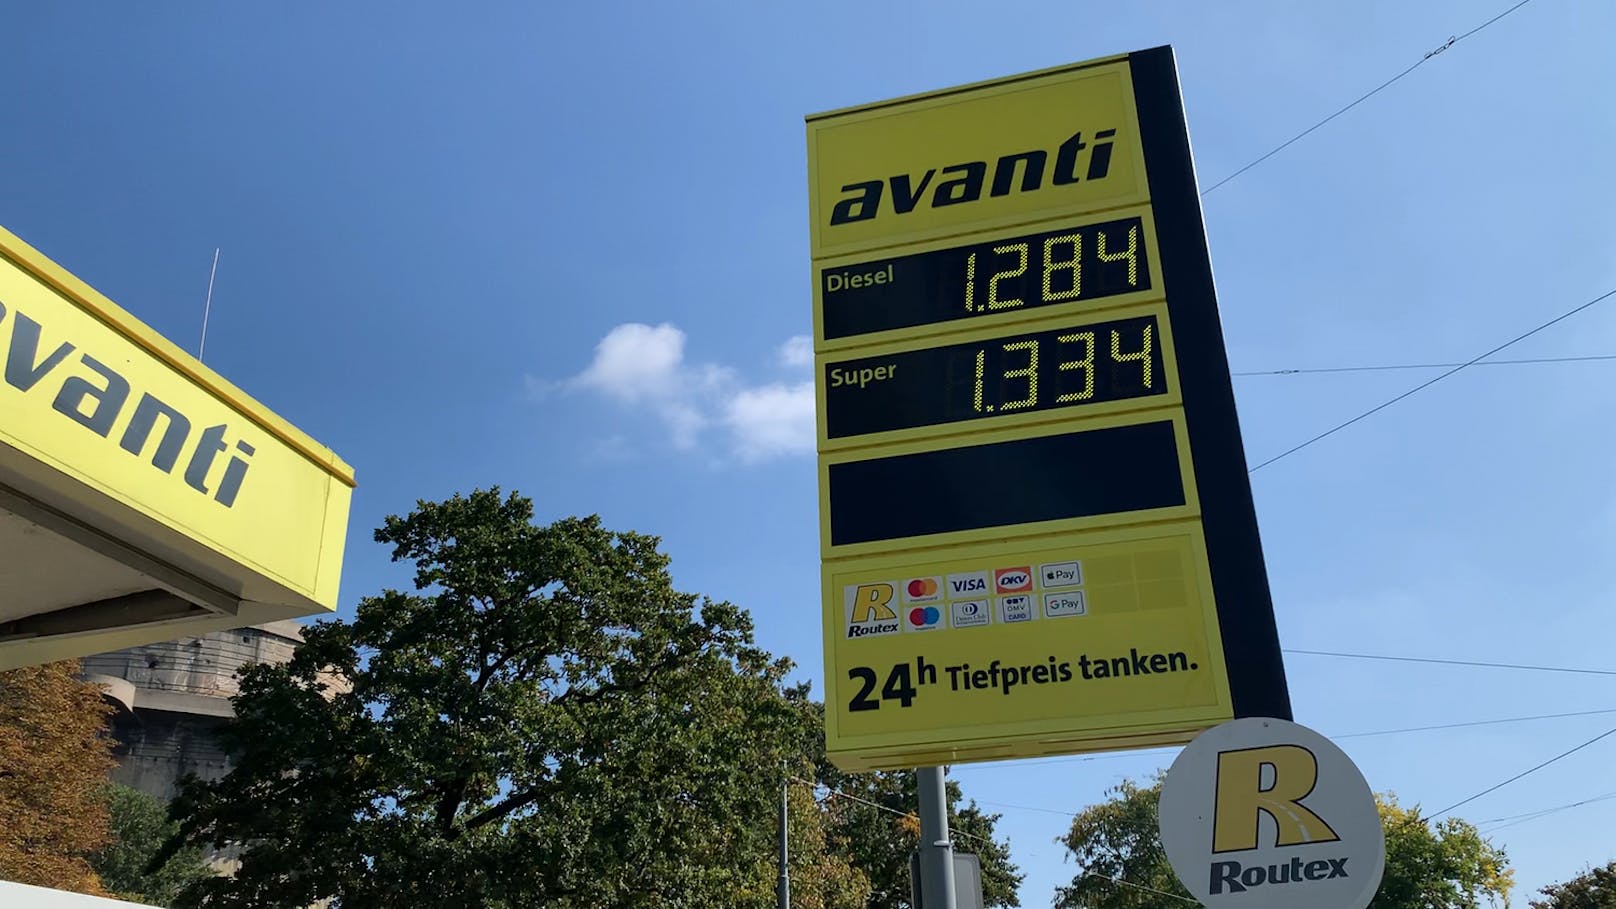 Bei einer Avanti-Tankstelle in Wien liegt der Preis für Super 95 bei 1,334 Euro pro Liter.